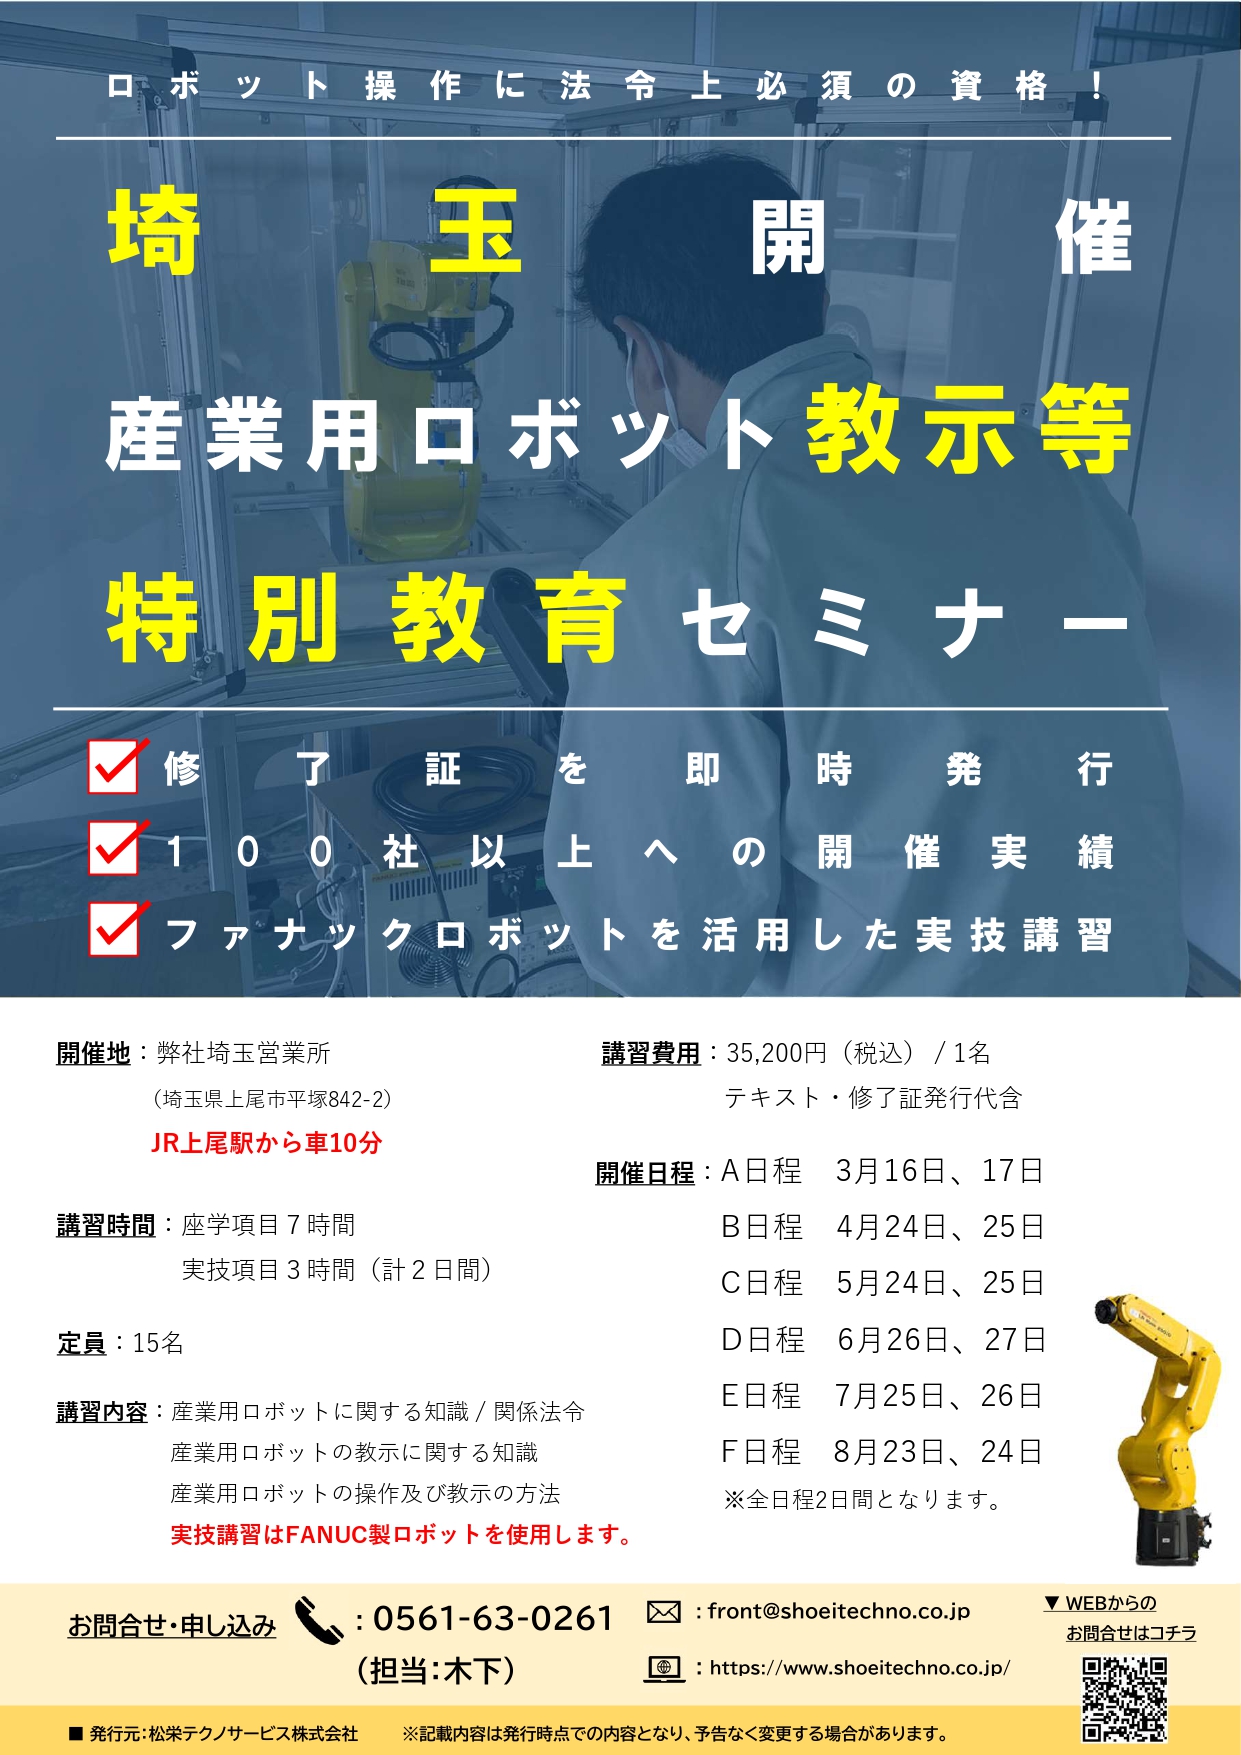 【終了しました】産業用ロボット特別教育（教示等）埼玉会場開催のお知らせ【2023年3月～2023年8月】